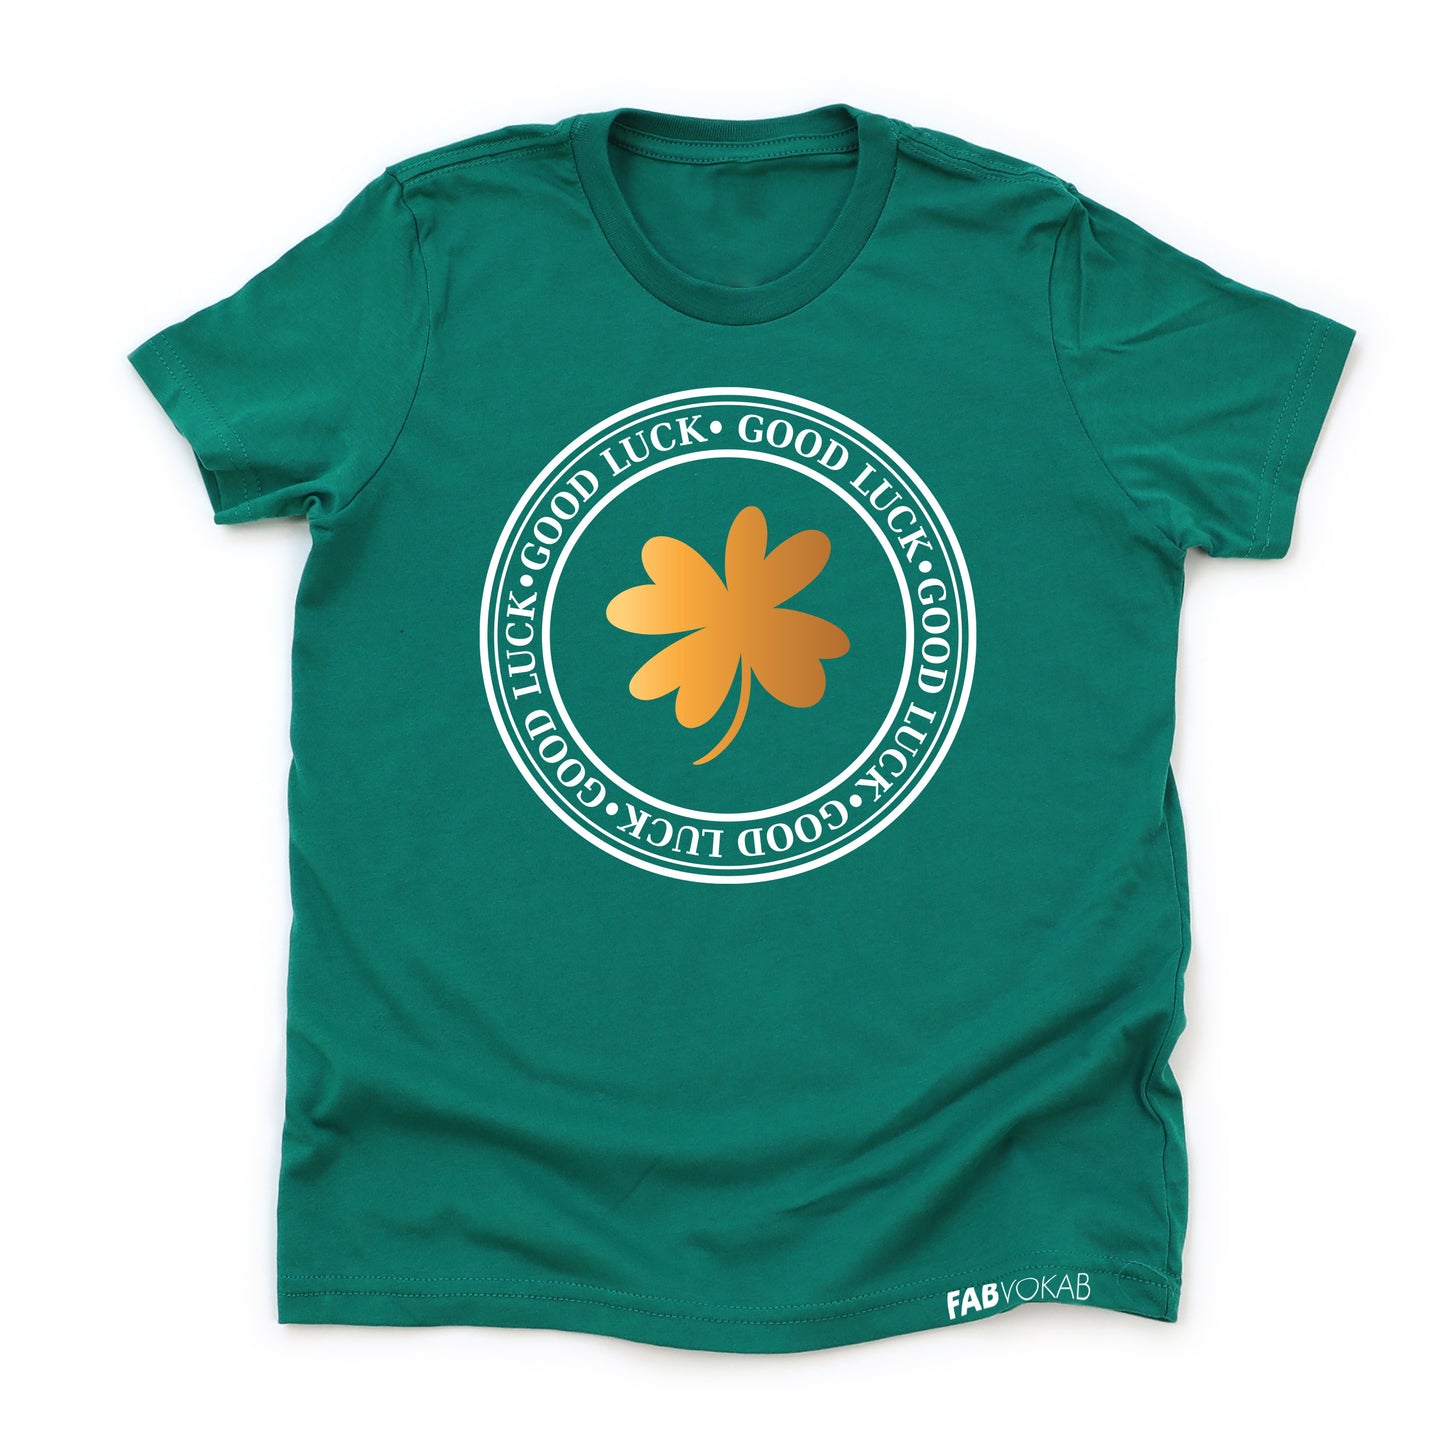 GOOD LUCK Saint Patrick's Green Short Sleeve Kids, Girls, Boys, Teens T-shirt